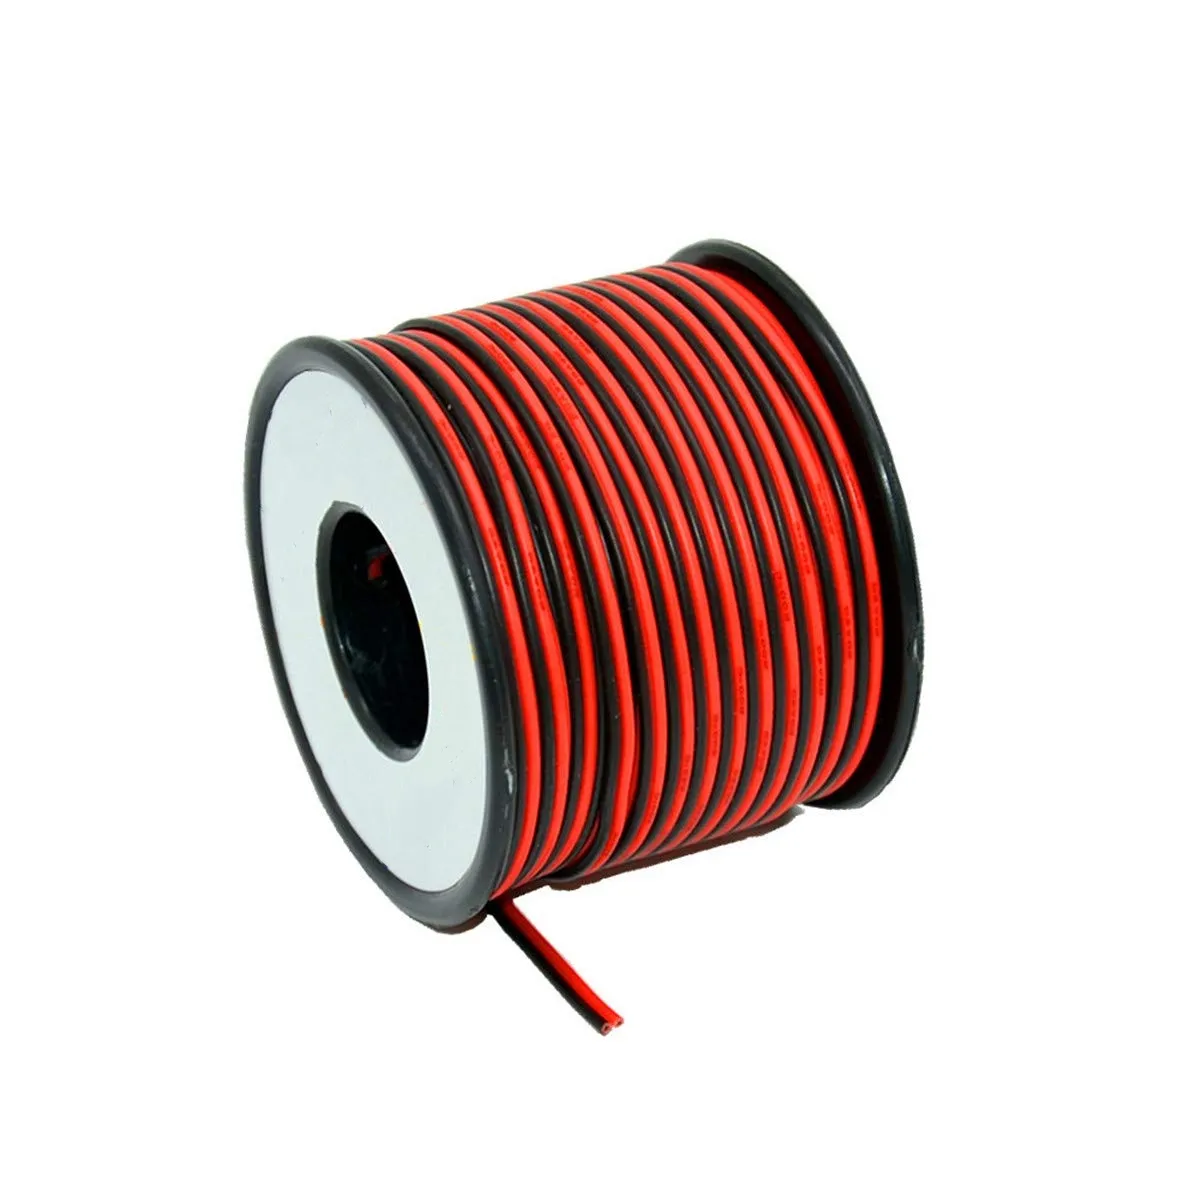 Fio elétrico de silicone 2 condutores cabo paralelo com carretel 12 /14 /16 fio de cobre estanhado trançado flexível para automotivo